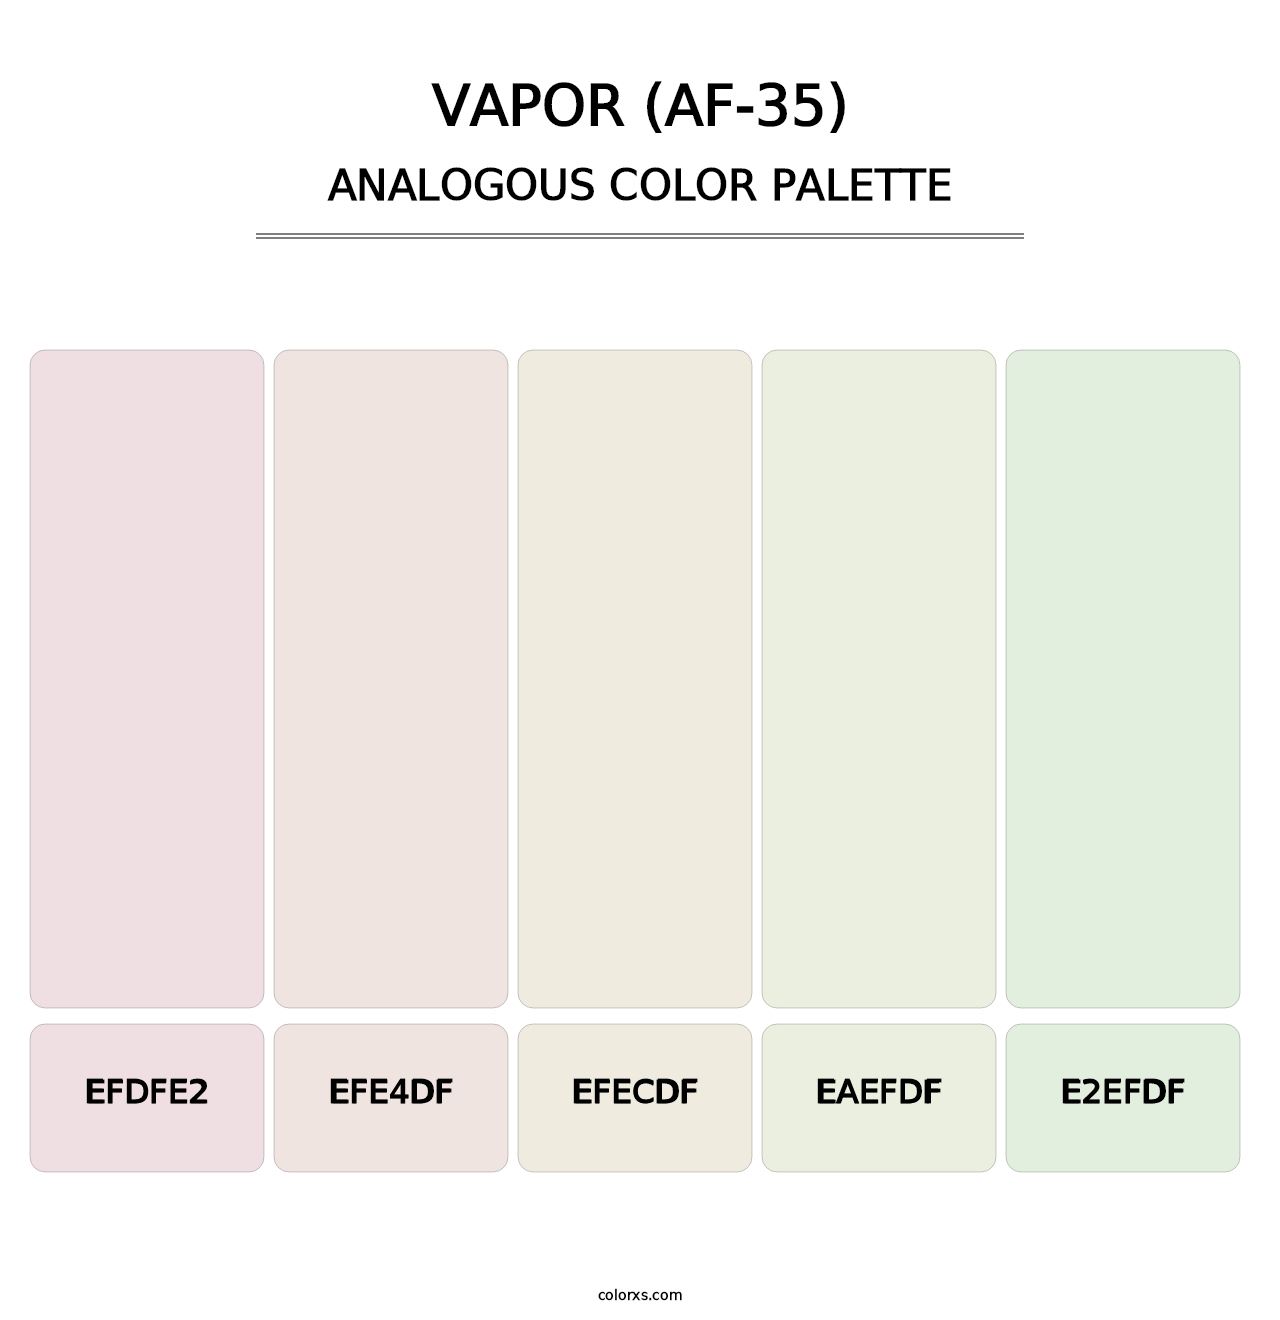 Vapor (AF-35) - Analogous Color Palette